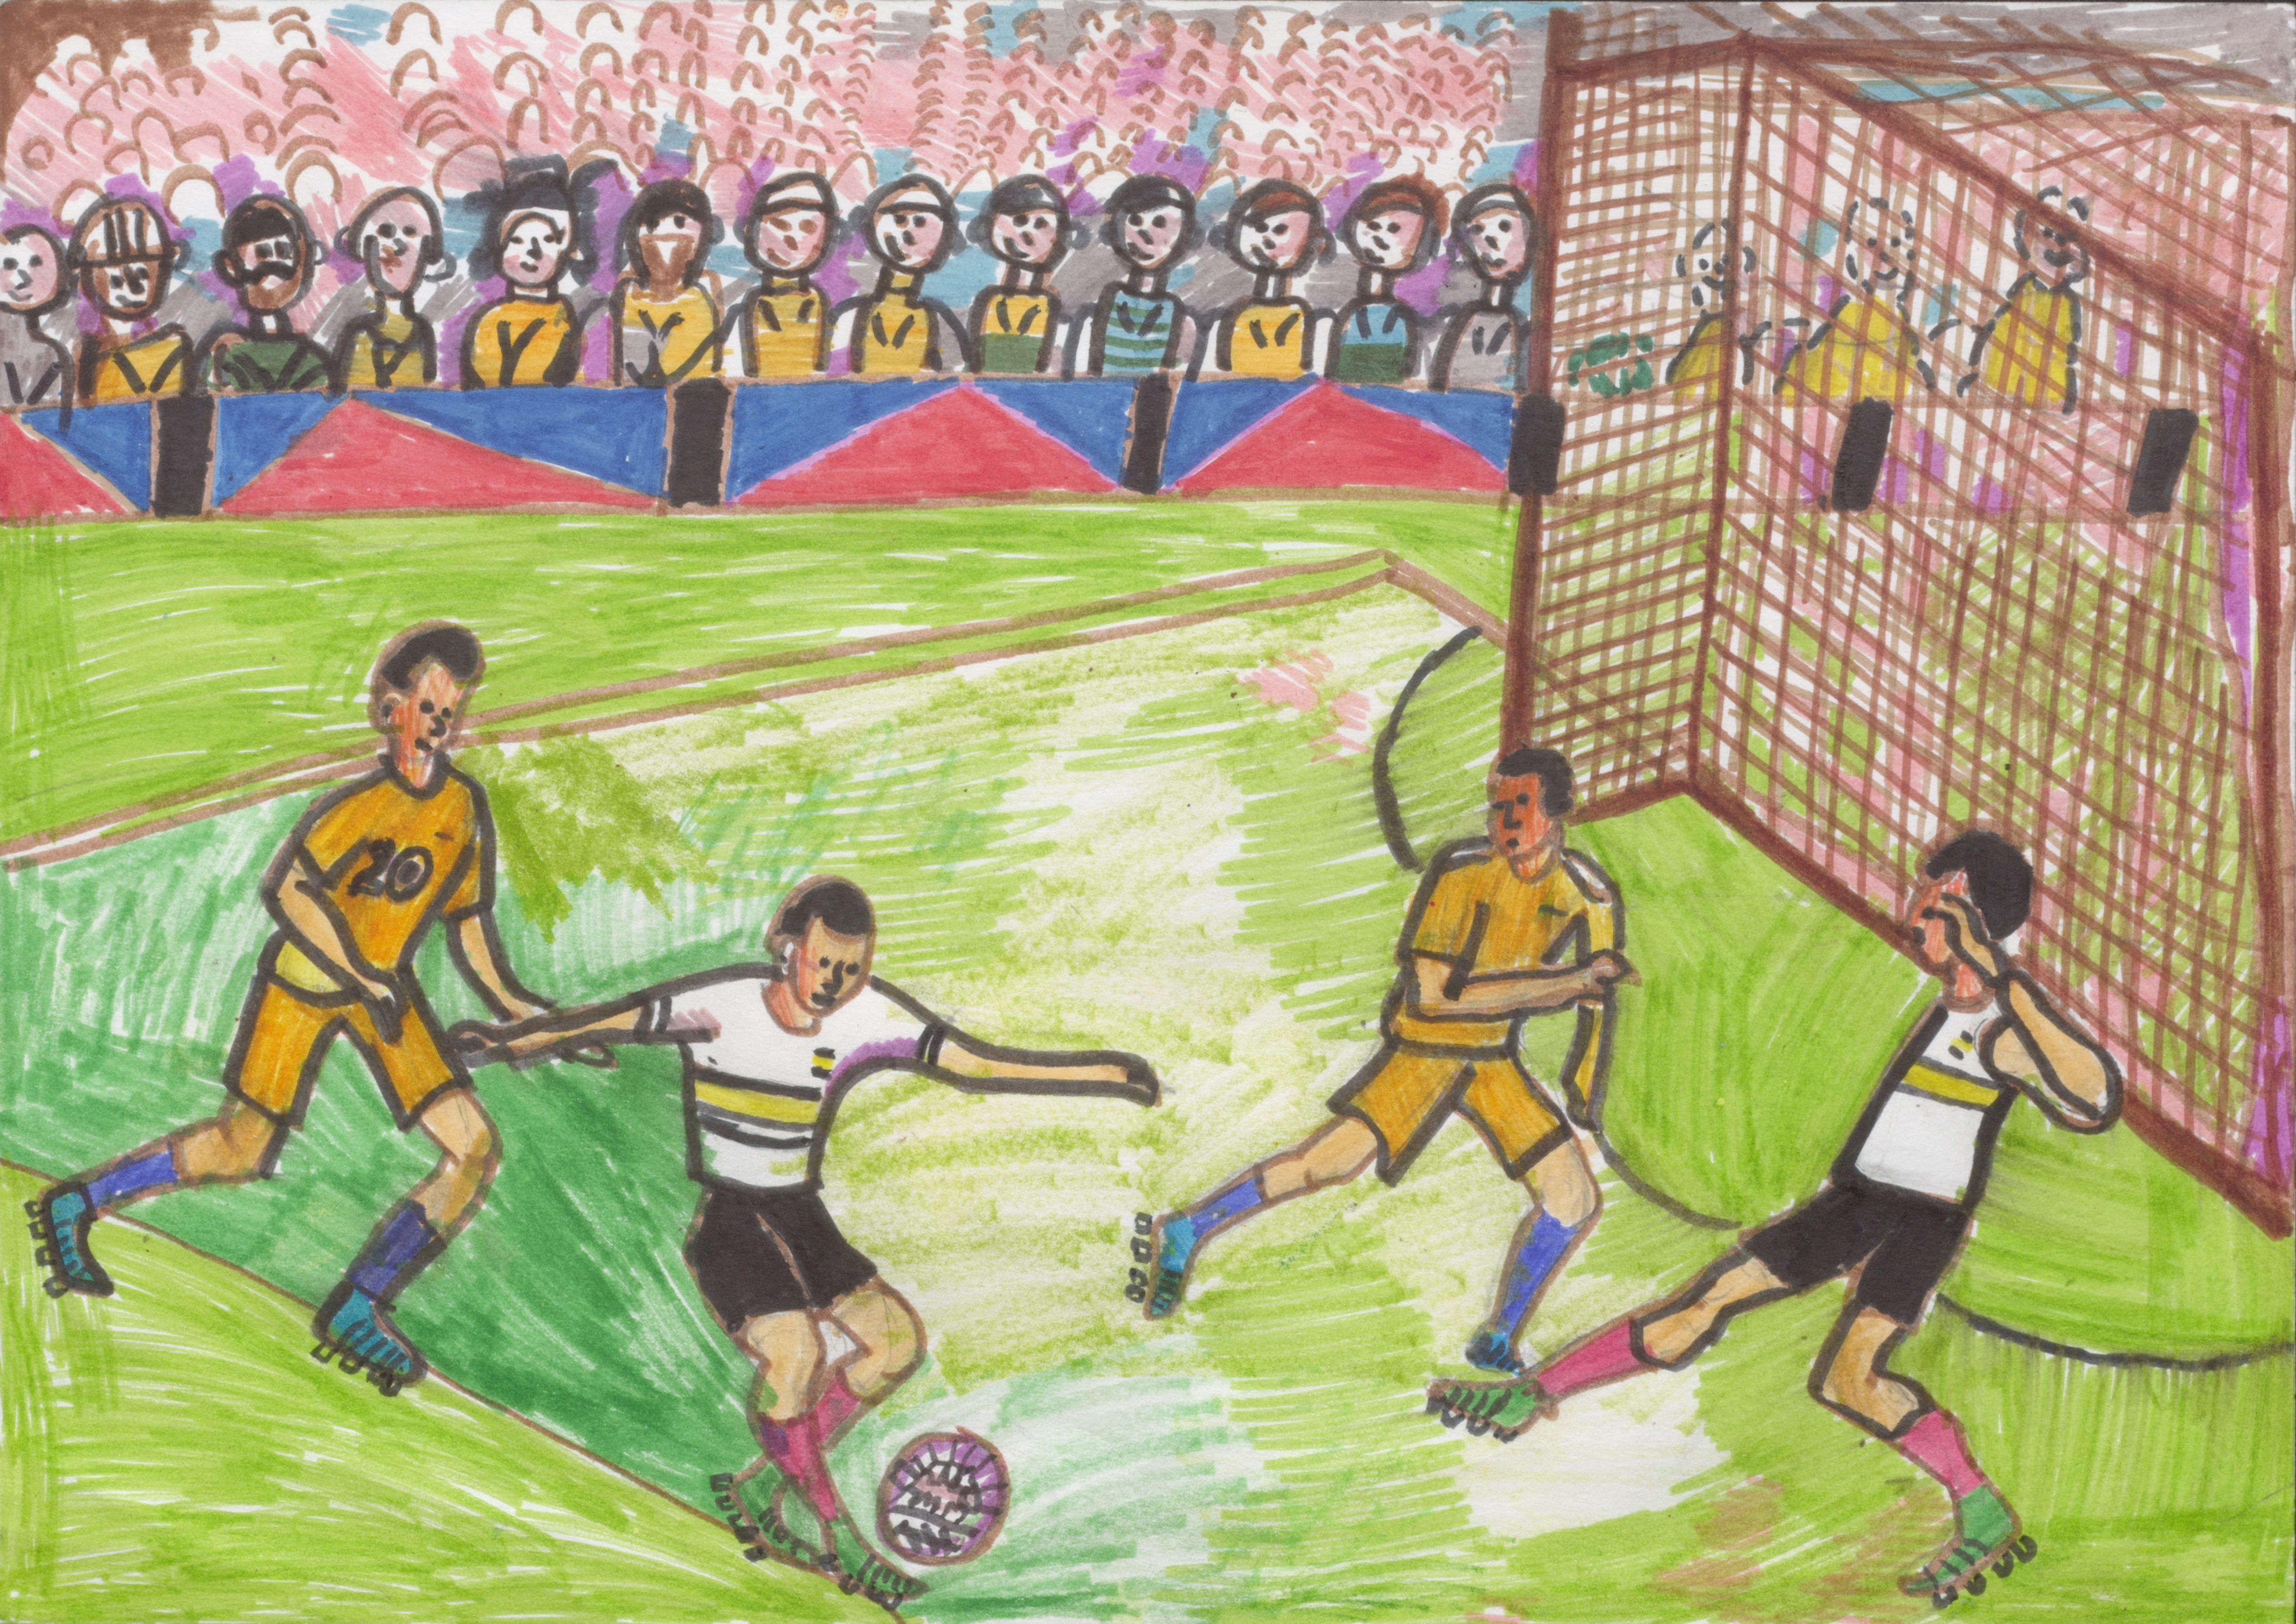 Иллюстрации на тему футбола